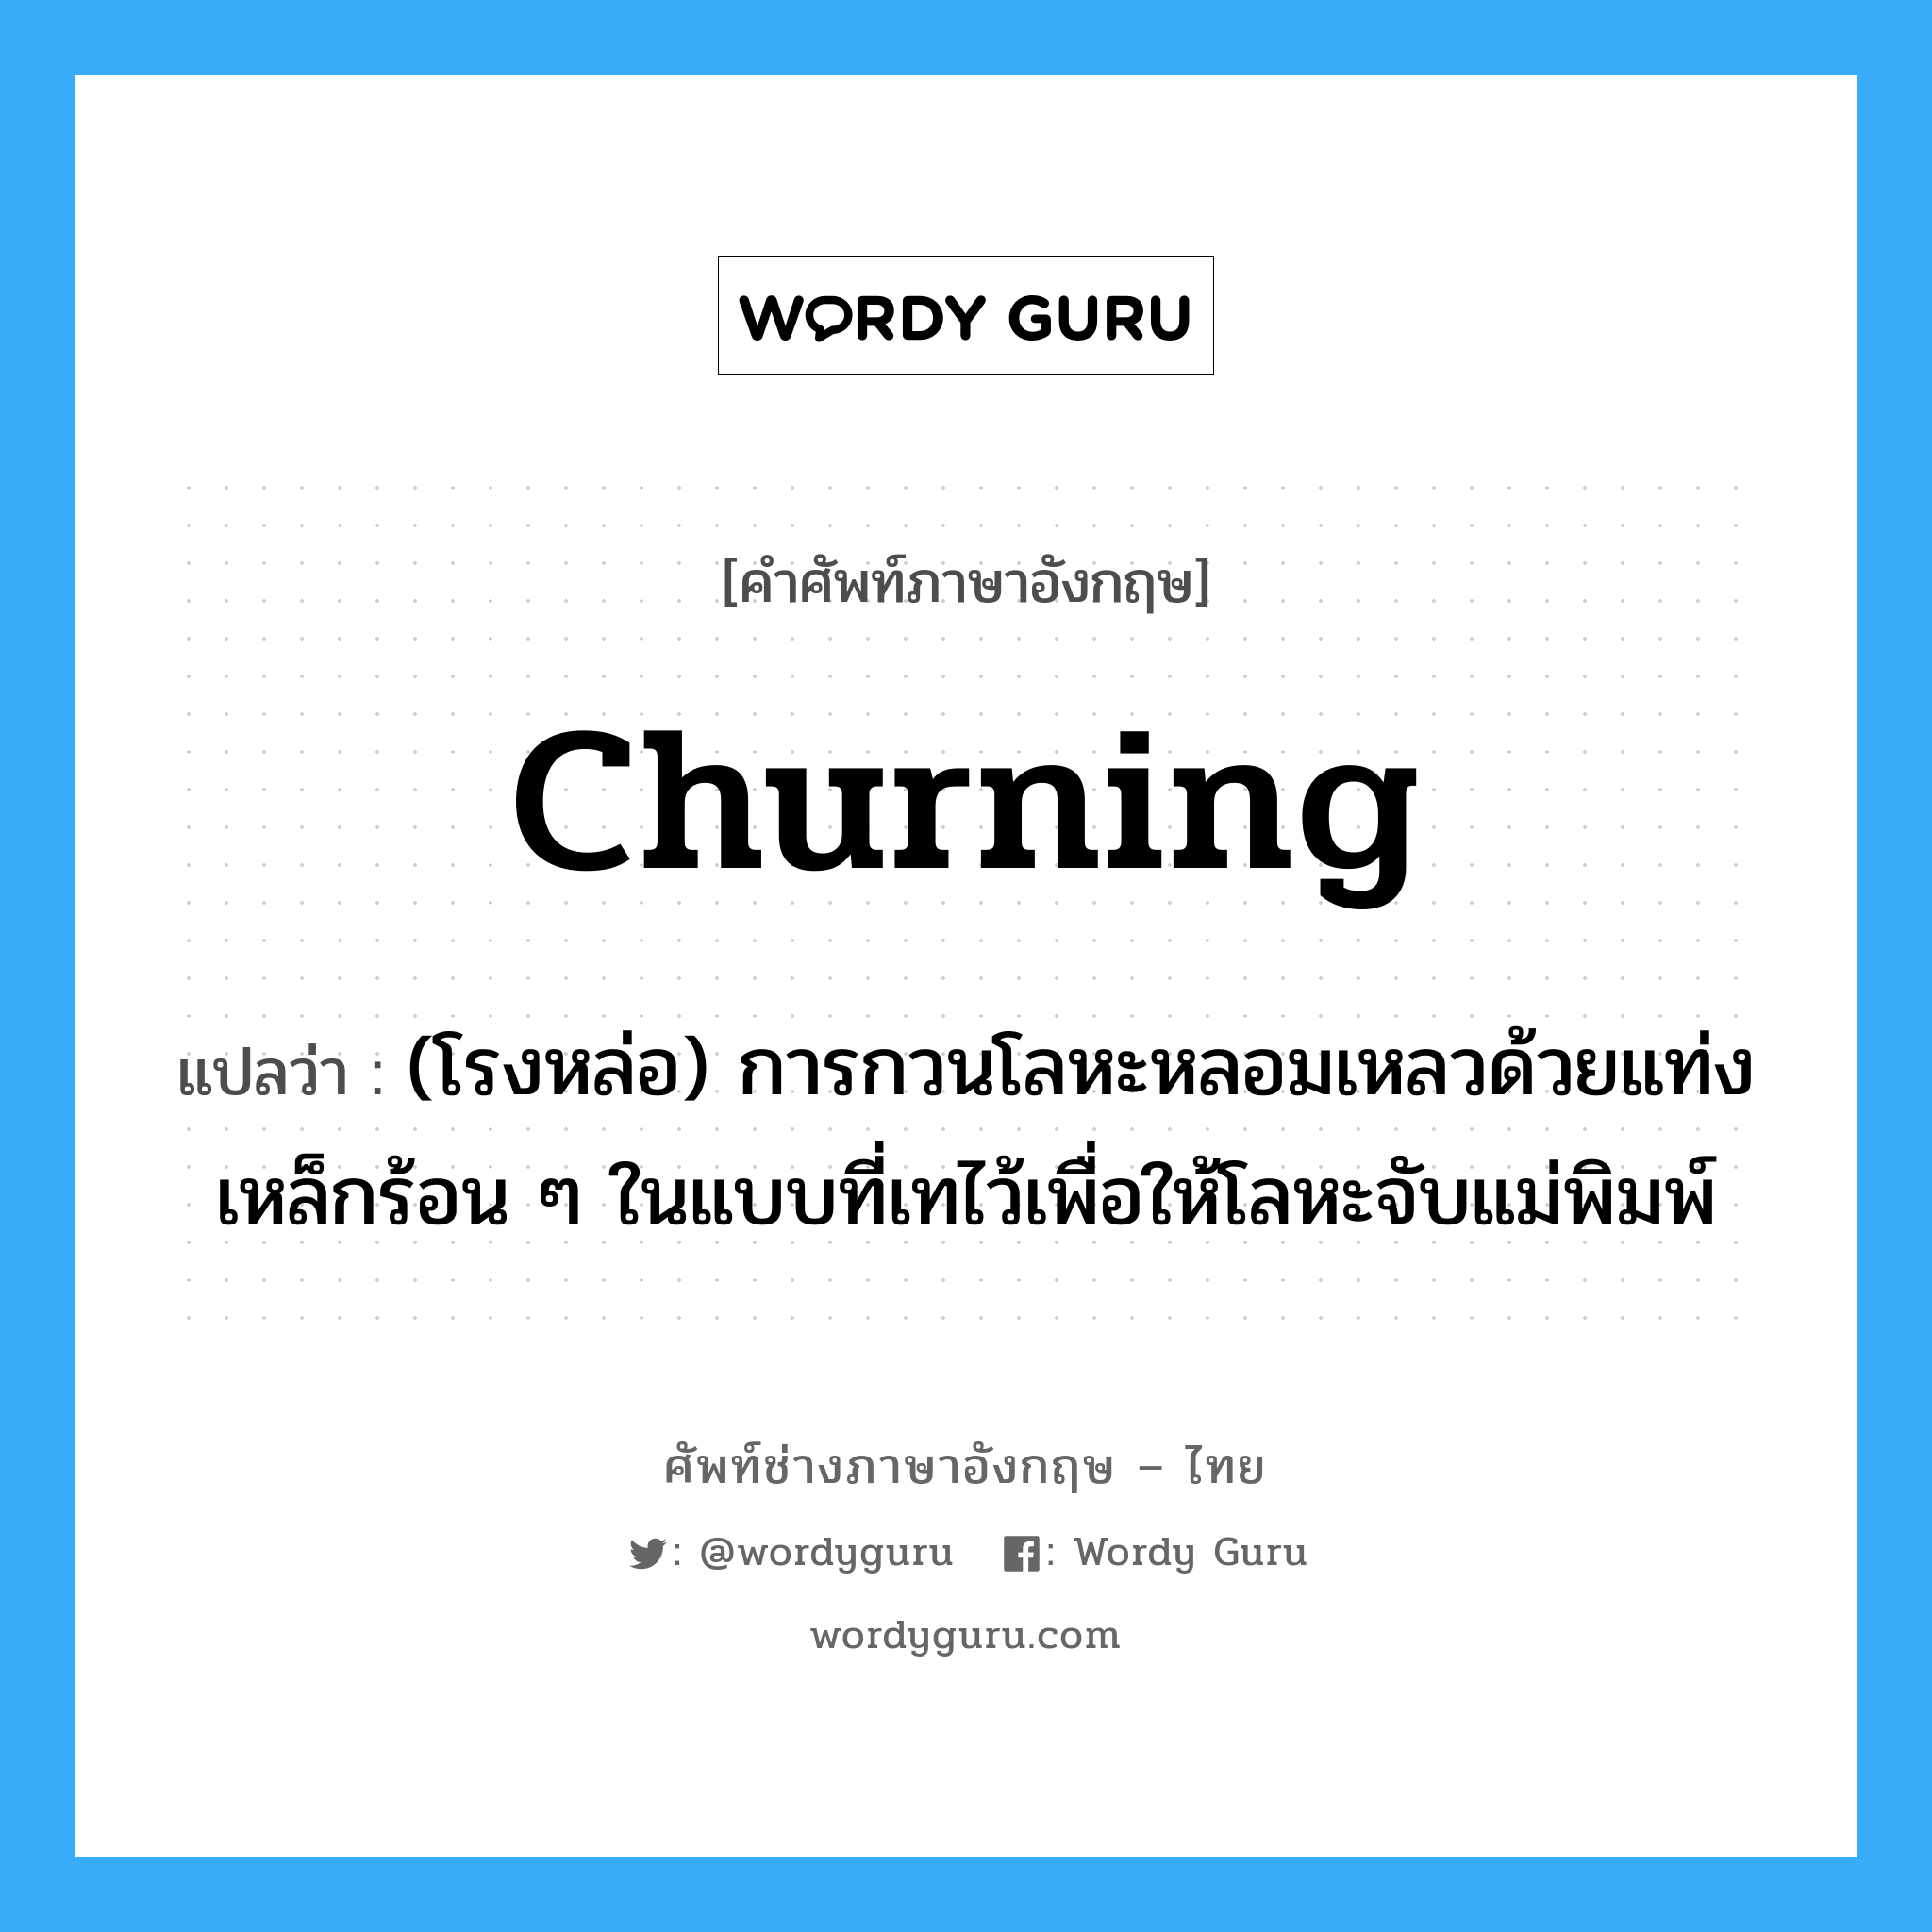 churning แปลว่า?, คำศัพท์ช่างภาษาอังกฤษ - ไทย churning คำศัพท์ภาษาอังกฤษ churning แปลว่า (โรงหล่อ) การกวนโลหะหลอมเหลวด้วยแท่งเหล็กร้อน ๆ ในแบบที่เทไว้เพื่อให้โลหะจับแม่พิมพ์